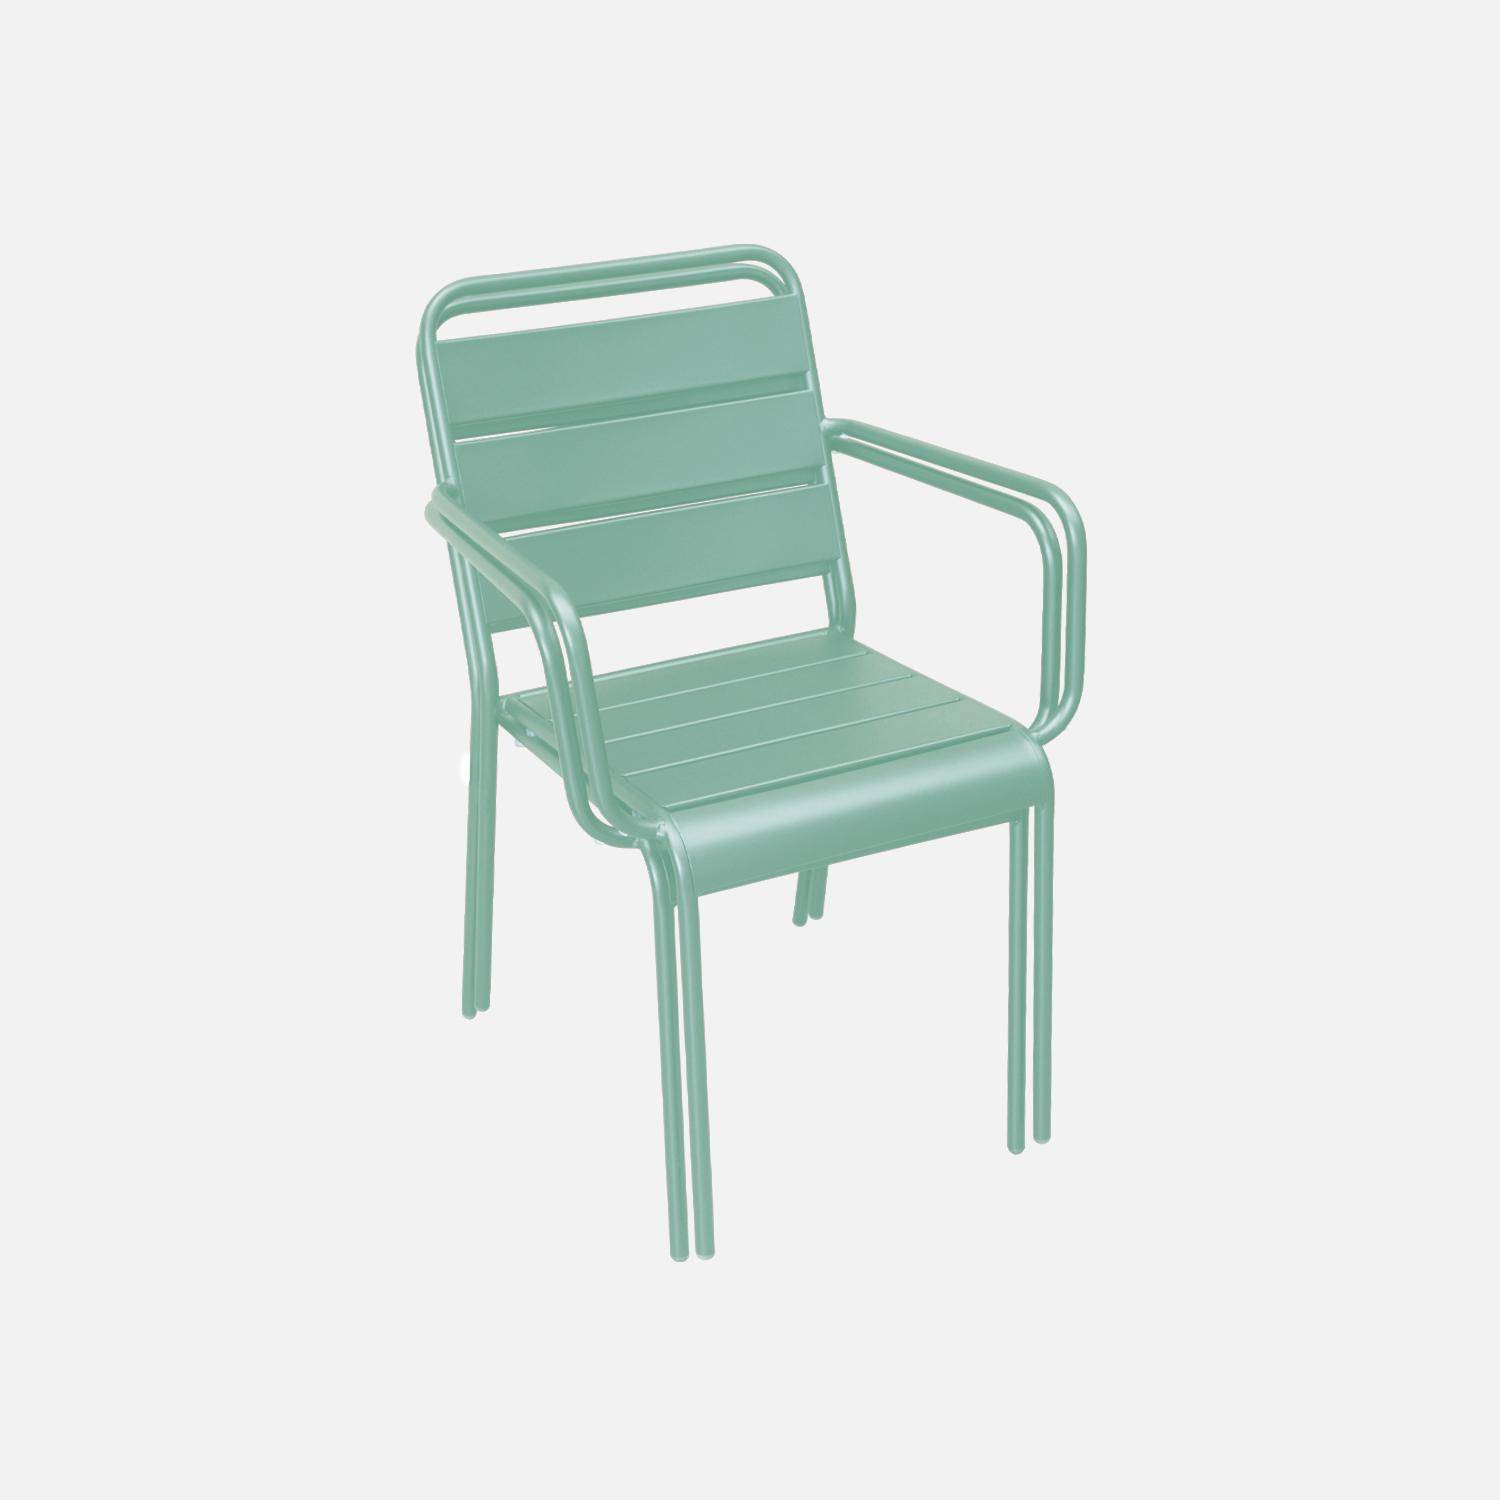 Lot de 2 fauteuils intérieur / extérieur en métal peinture antirouille empilables coloris vert jade,sweeek,Photo3